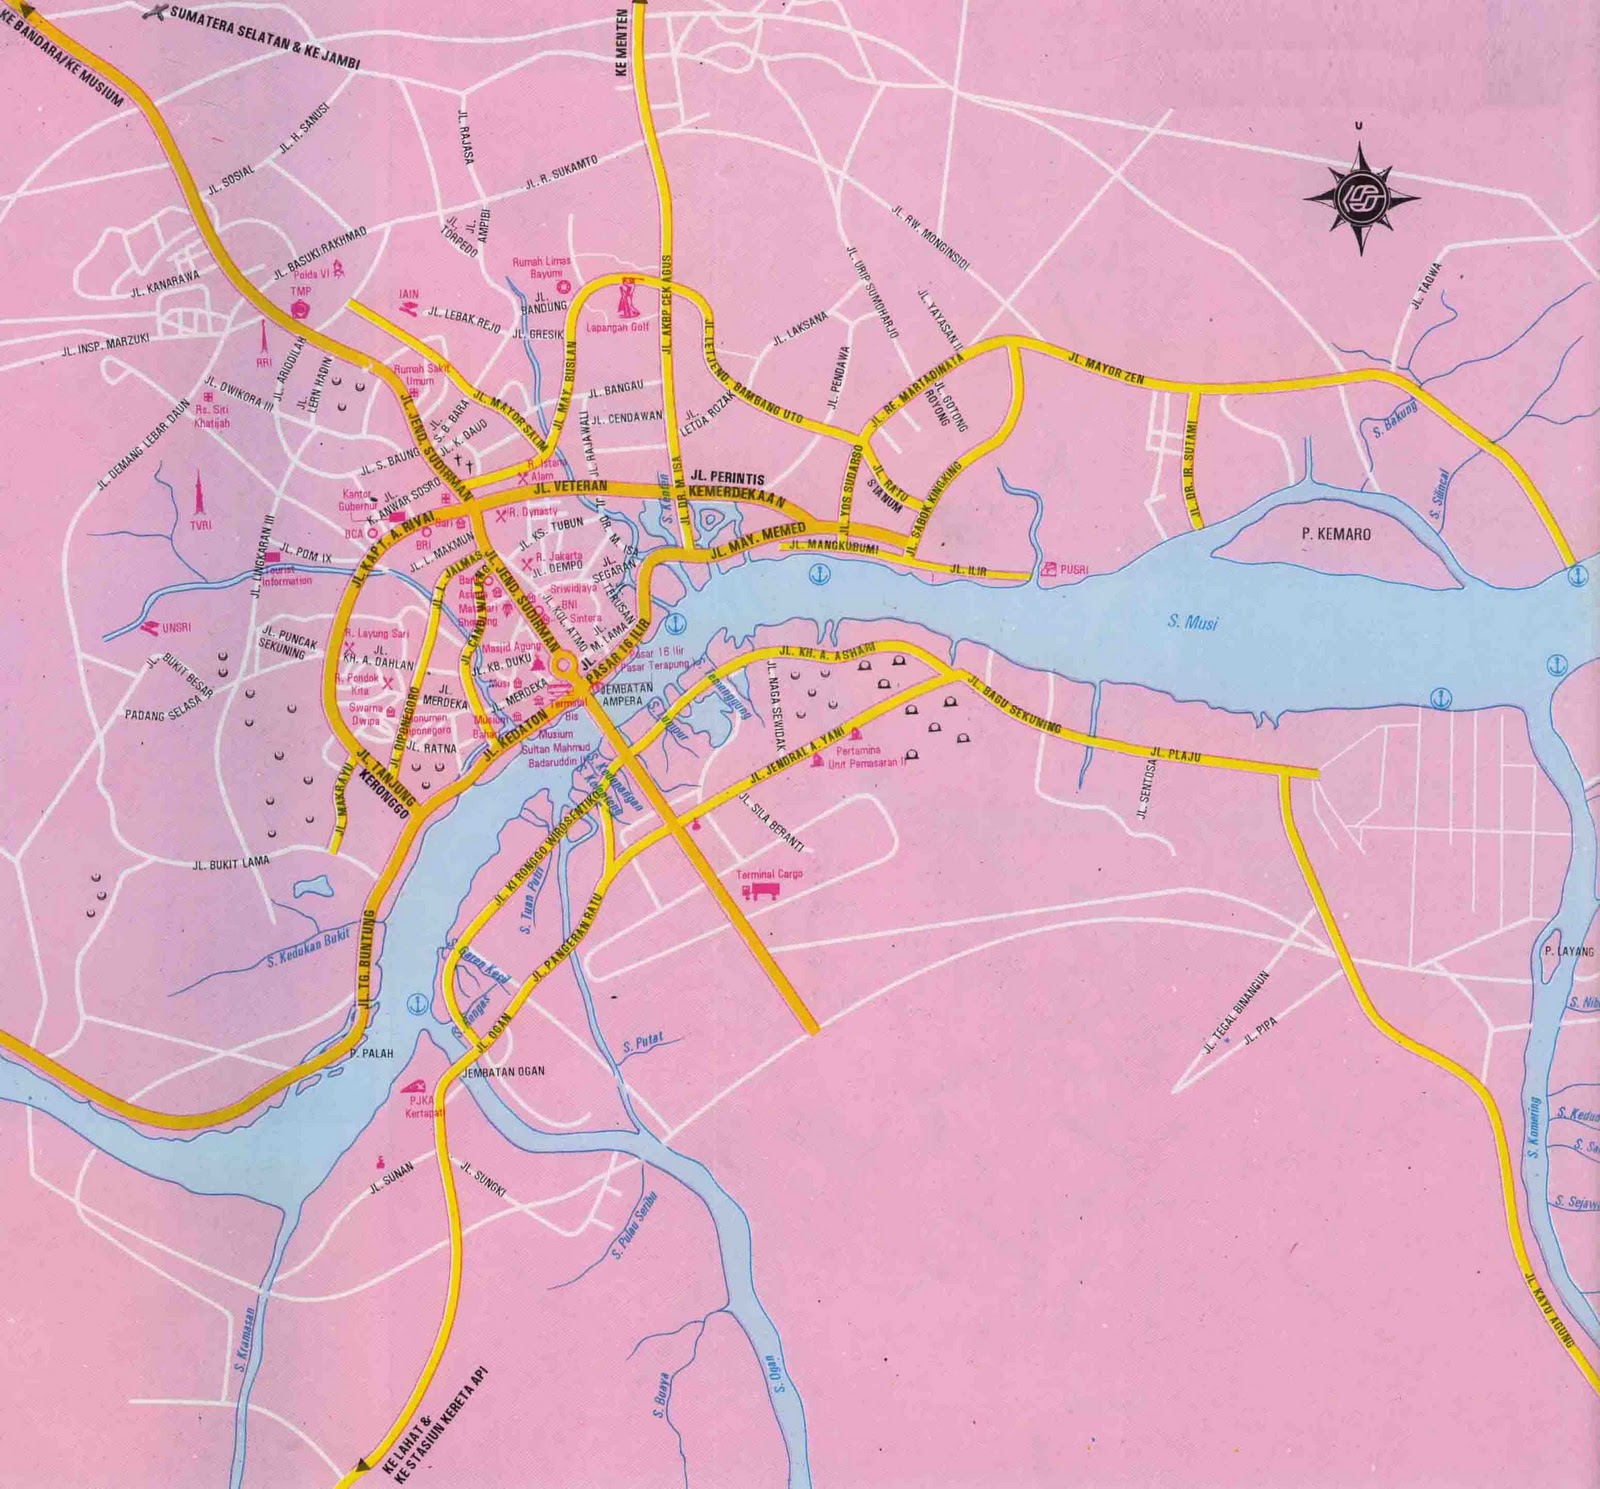 Peta Administrasi Kota Palembang